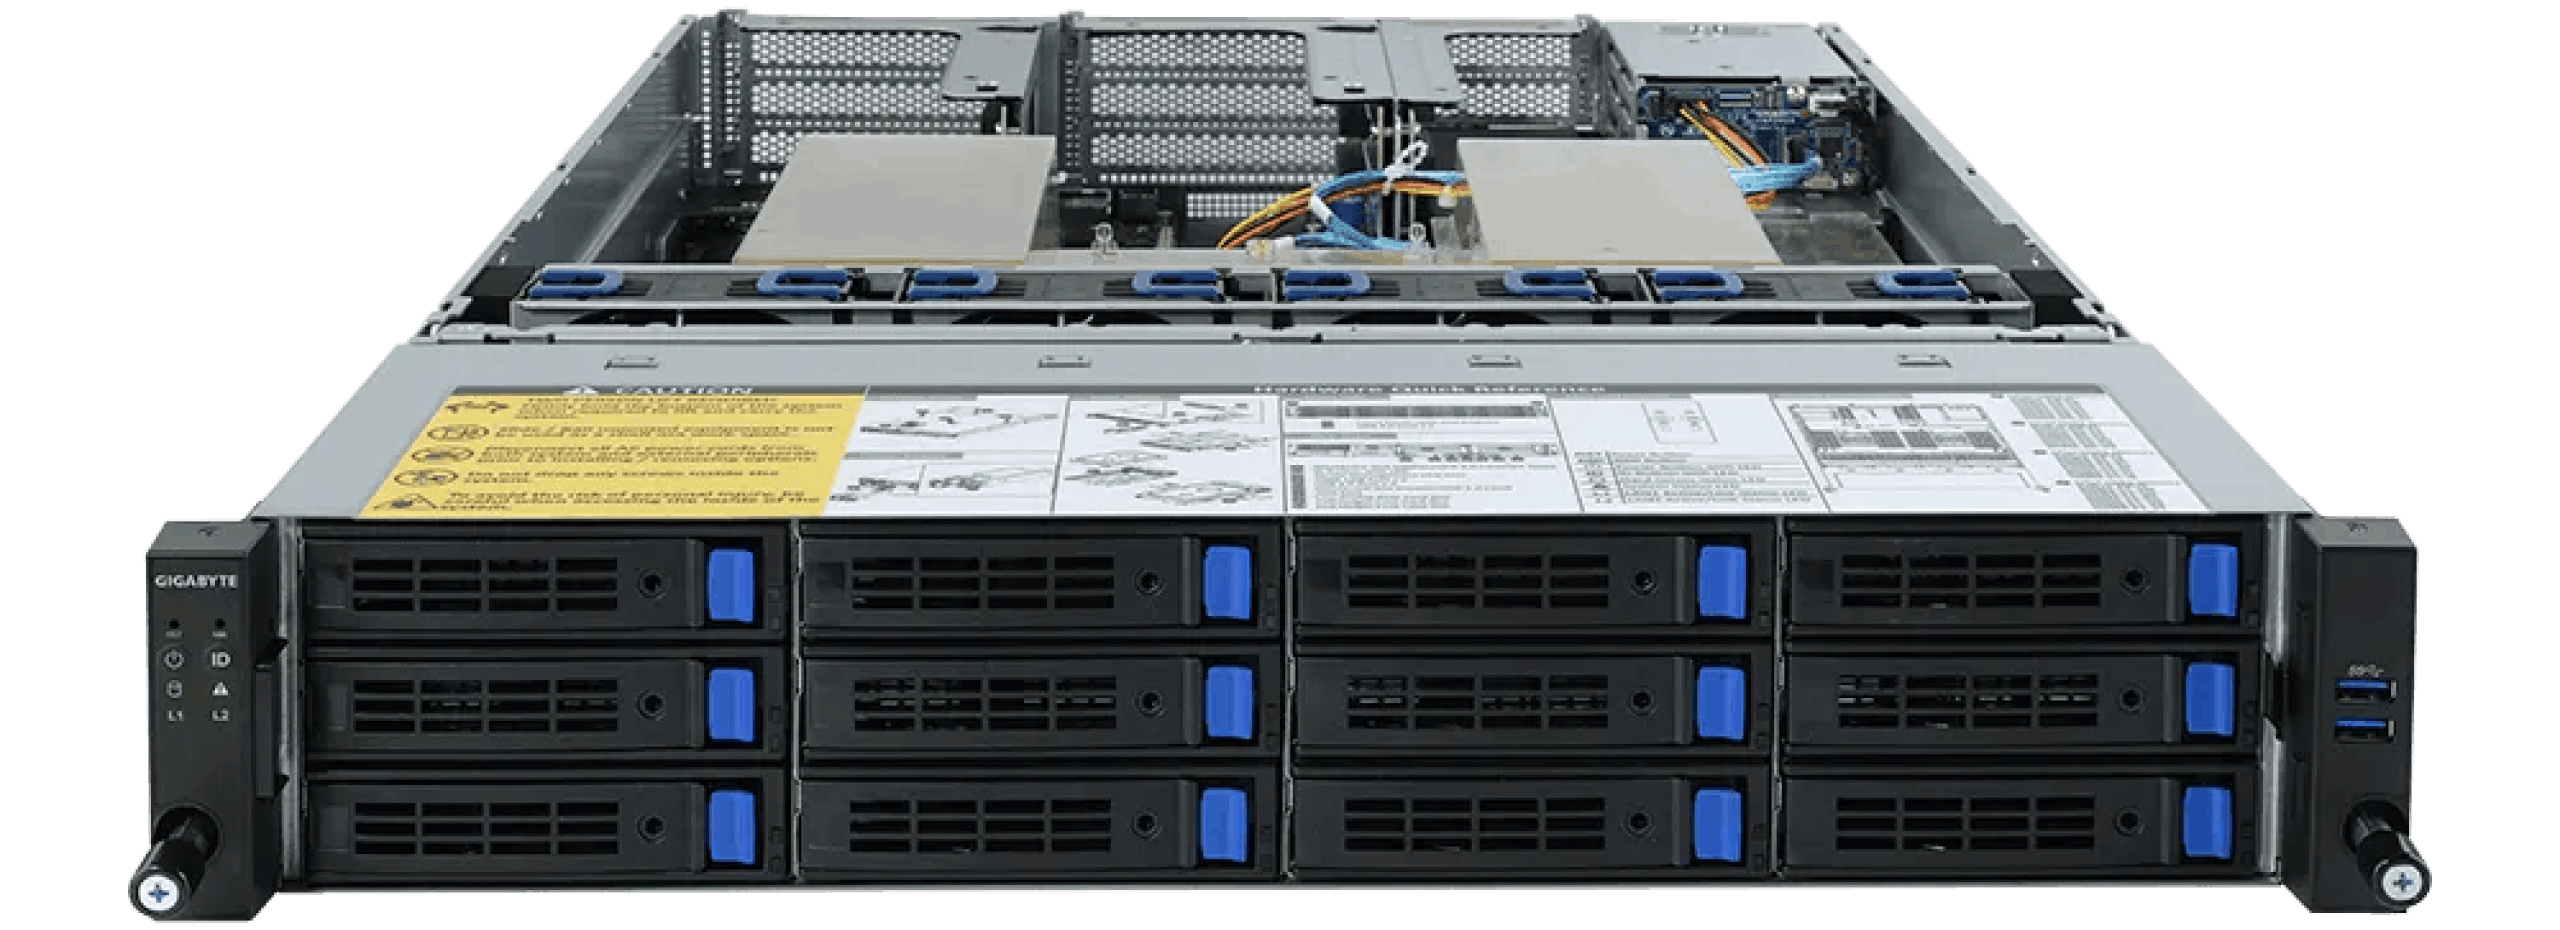 Front ports of the Eland Pro 2U server